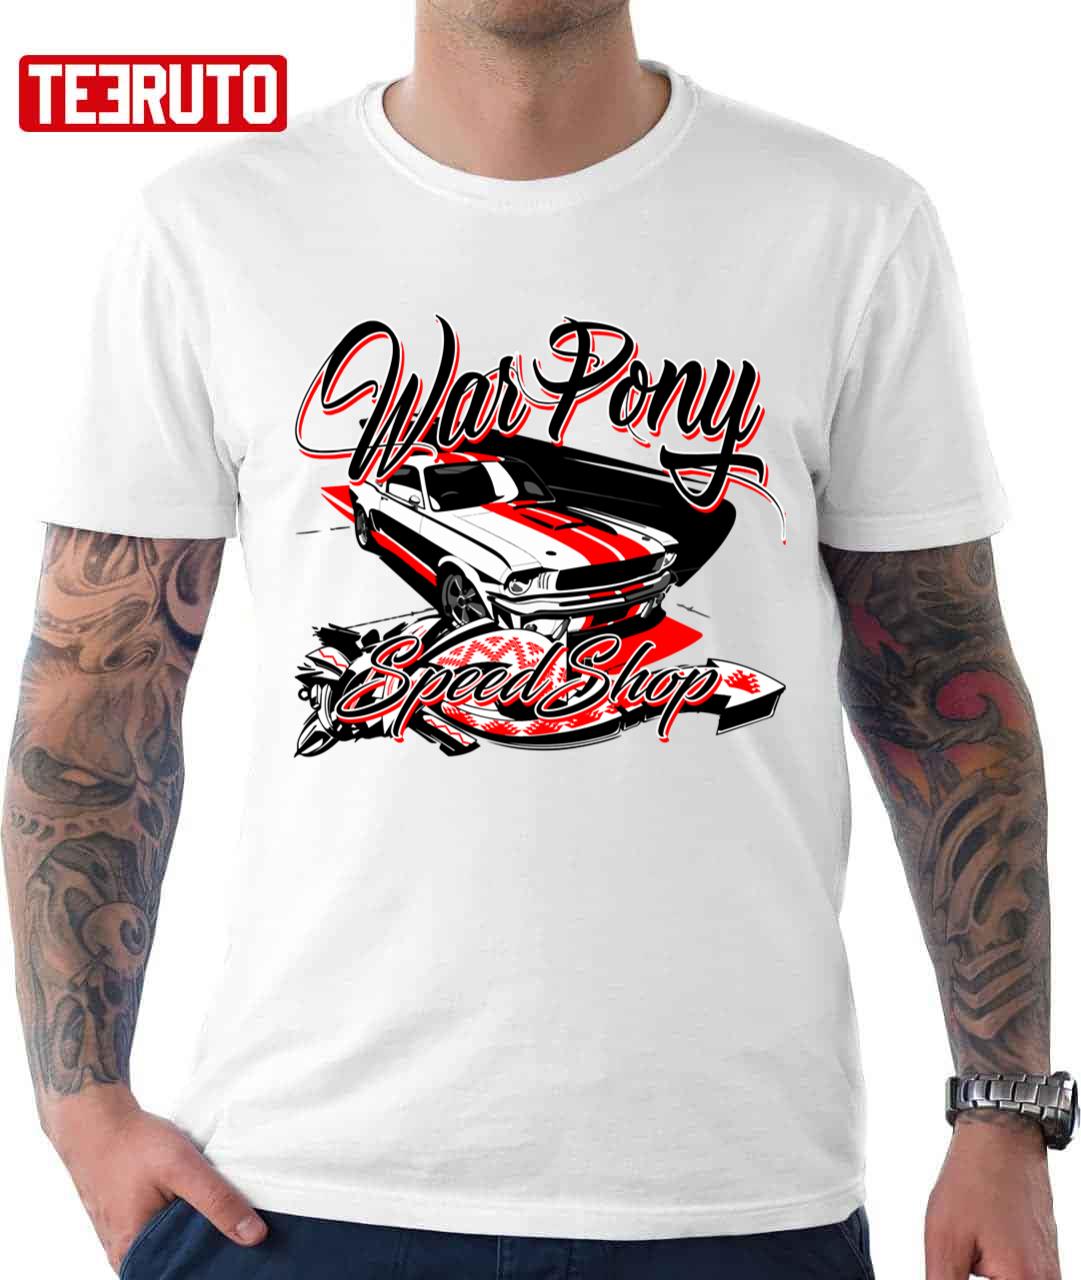 War Pony Speed Shop Mustang Design Unisex T-shirt